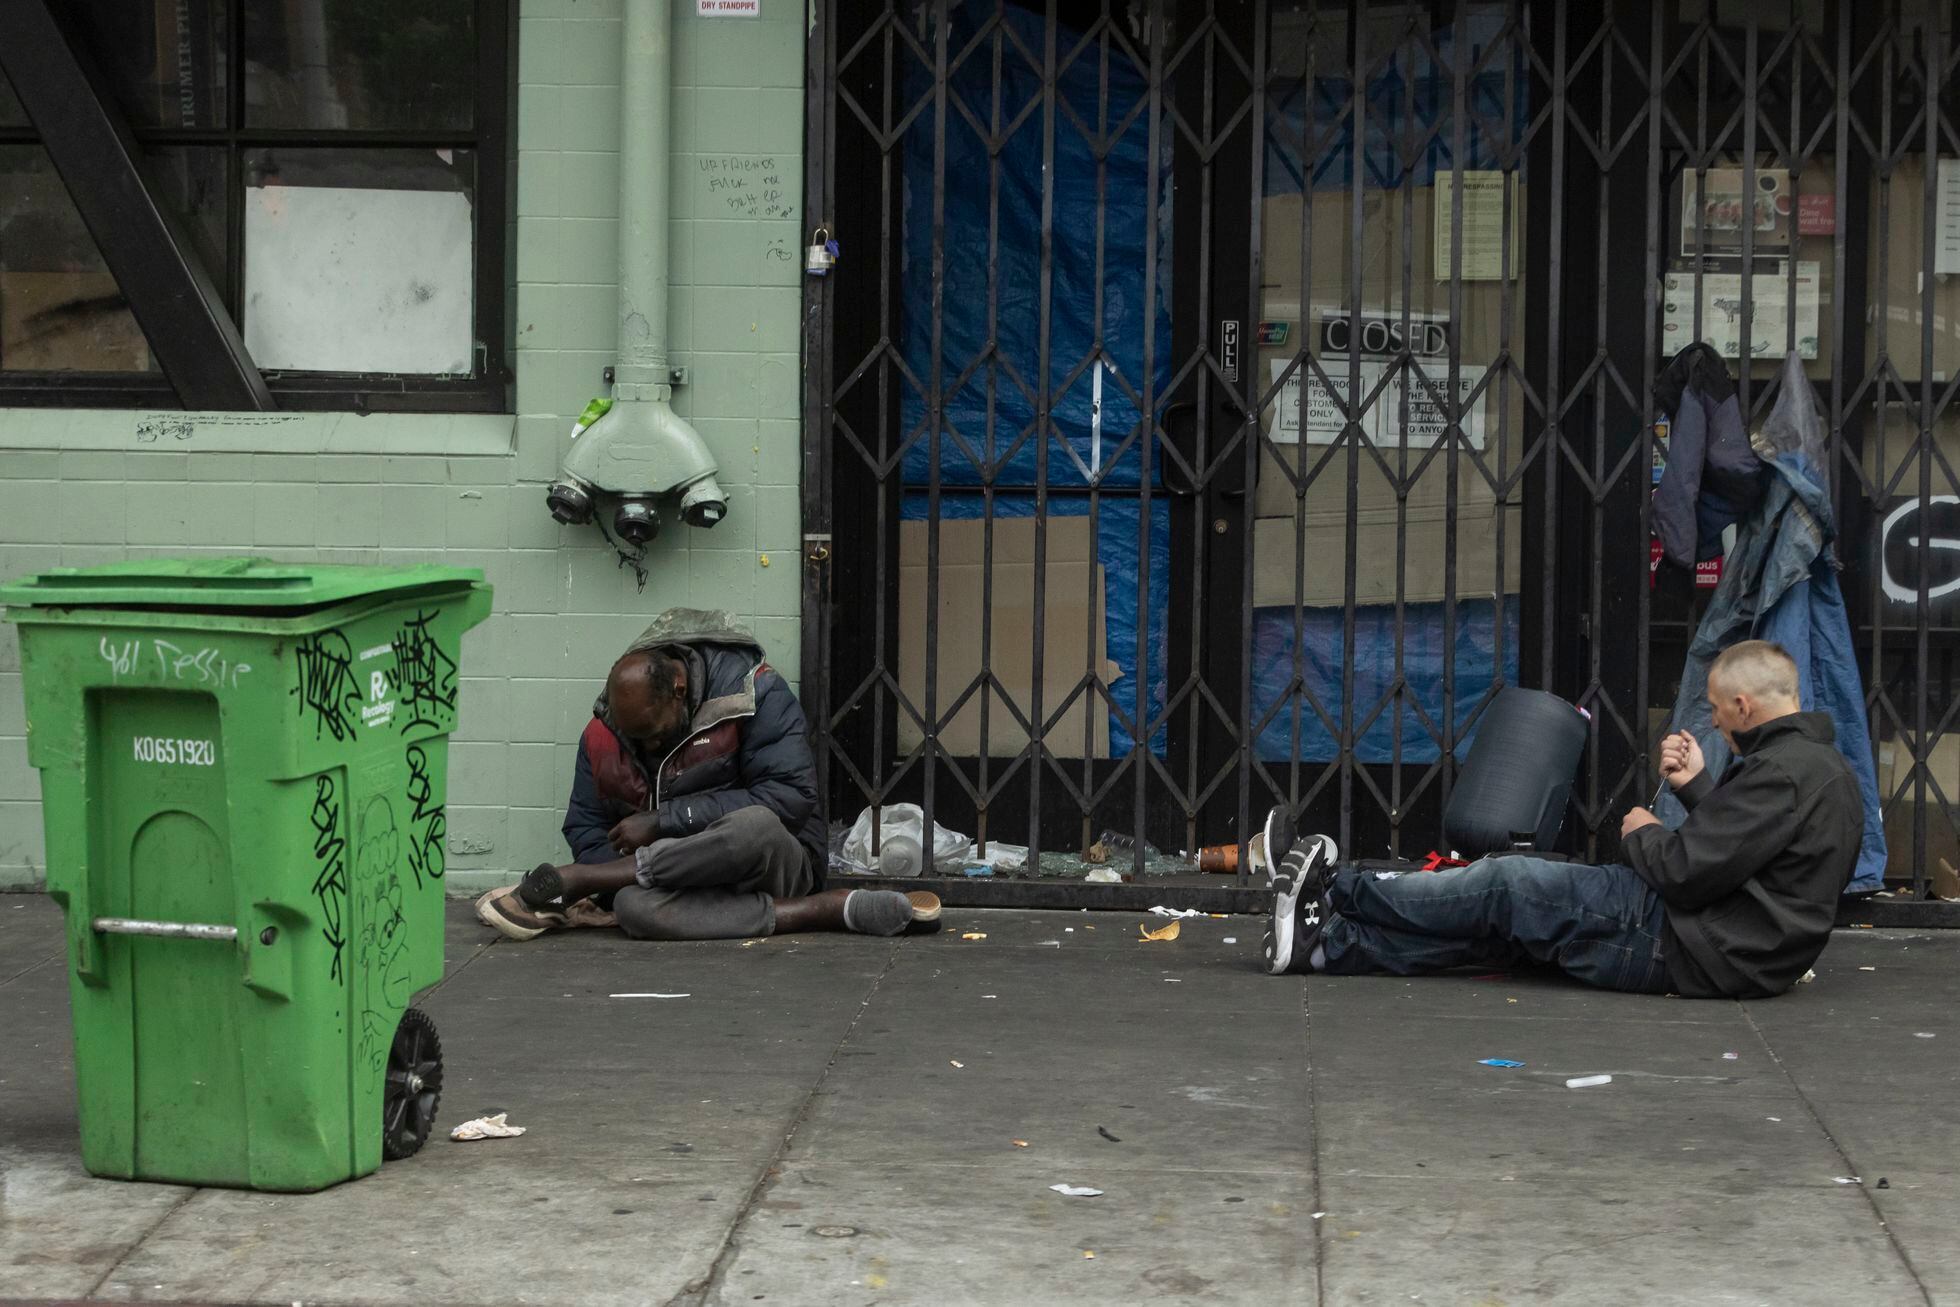 Personas sin hogar en el barrio de Tenderloin, en San Francisco, en el que el ayuntamiento tuvo que declarar el estado de emergencia en 2021 debido a las muertes por sobredosis.